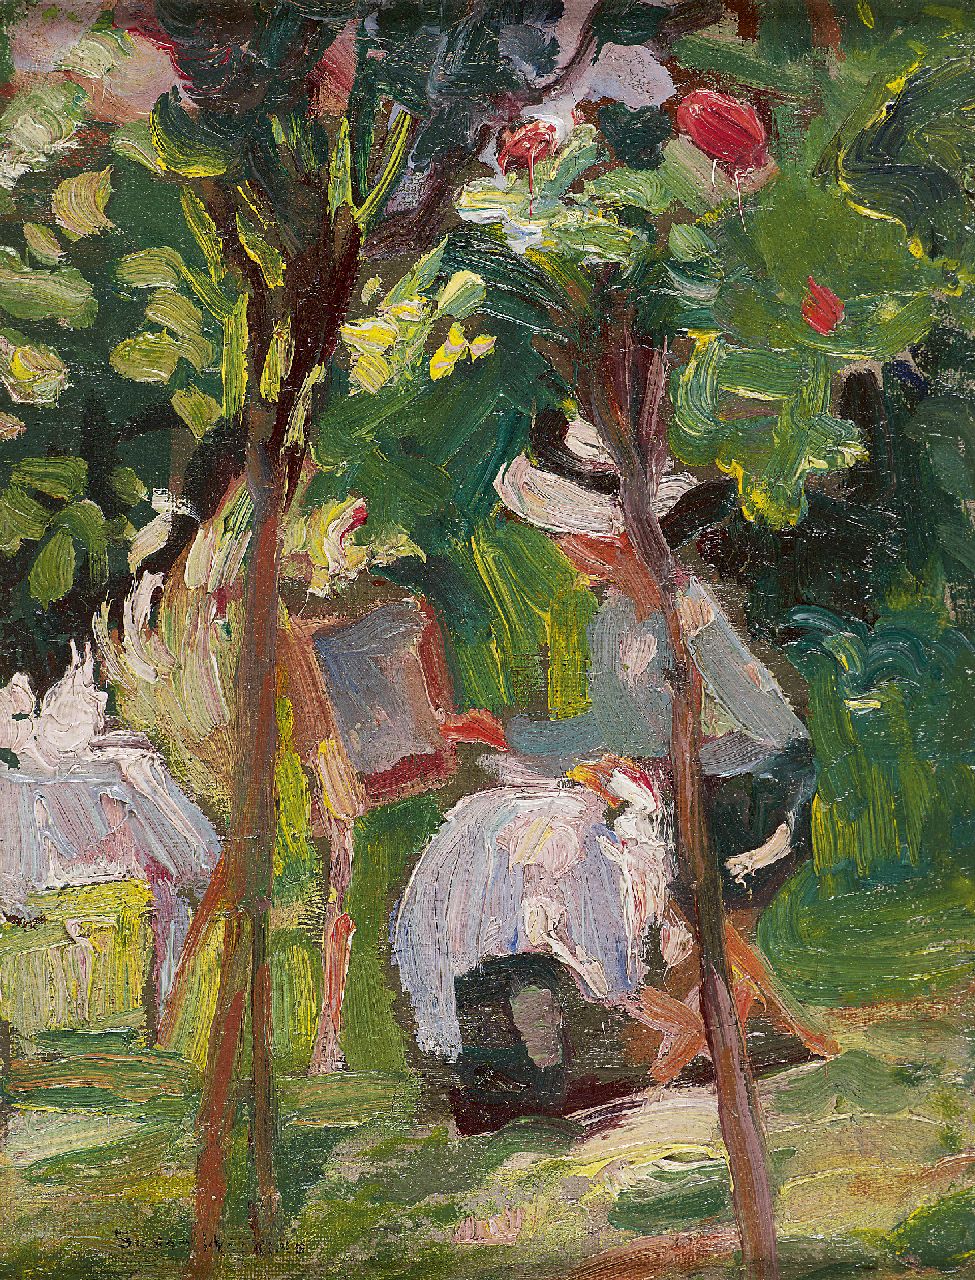 Susan Watkins | Painting in the garden, Öl auf Leinwand  auf Holzfaser, 23,1 x 17,9 cm, signed l.l.